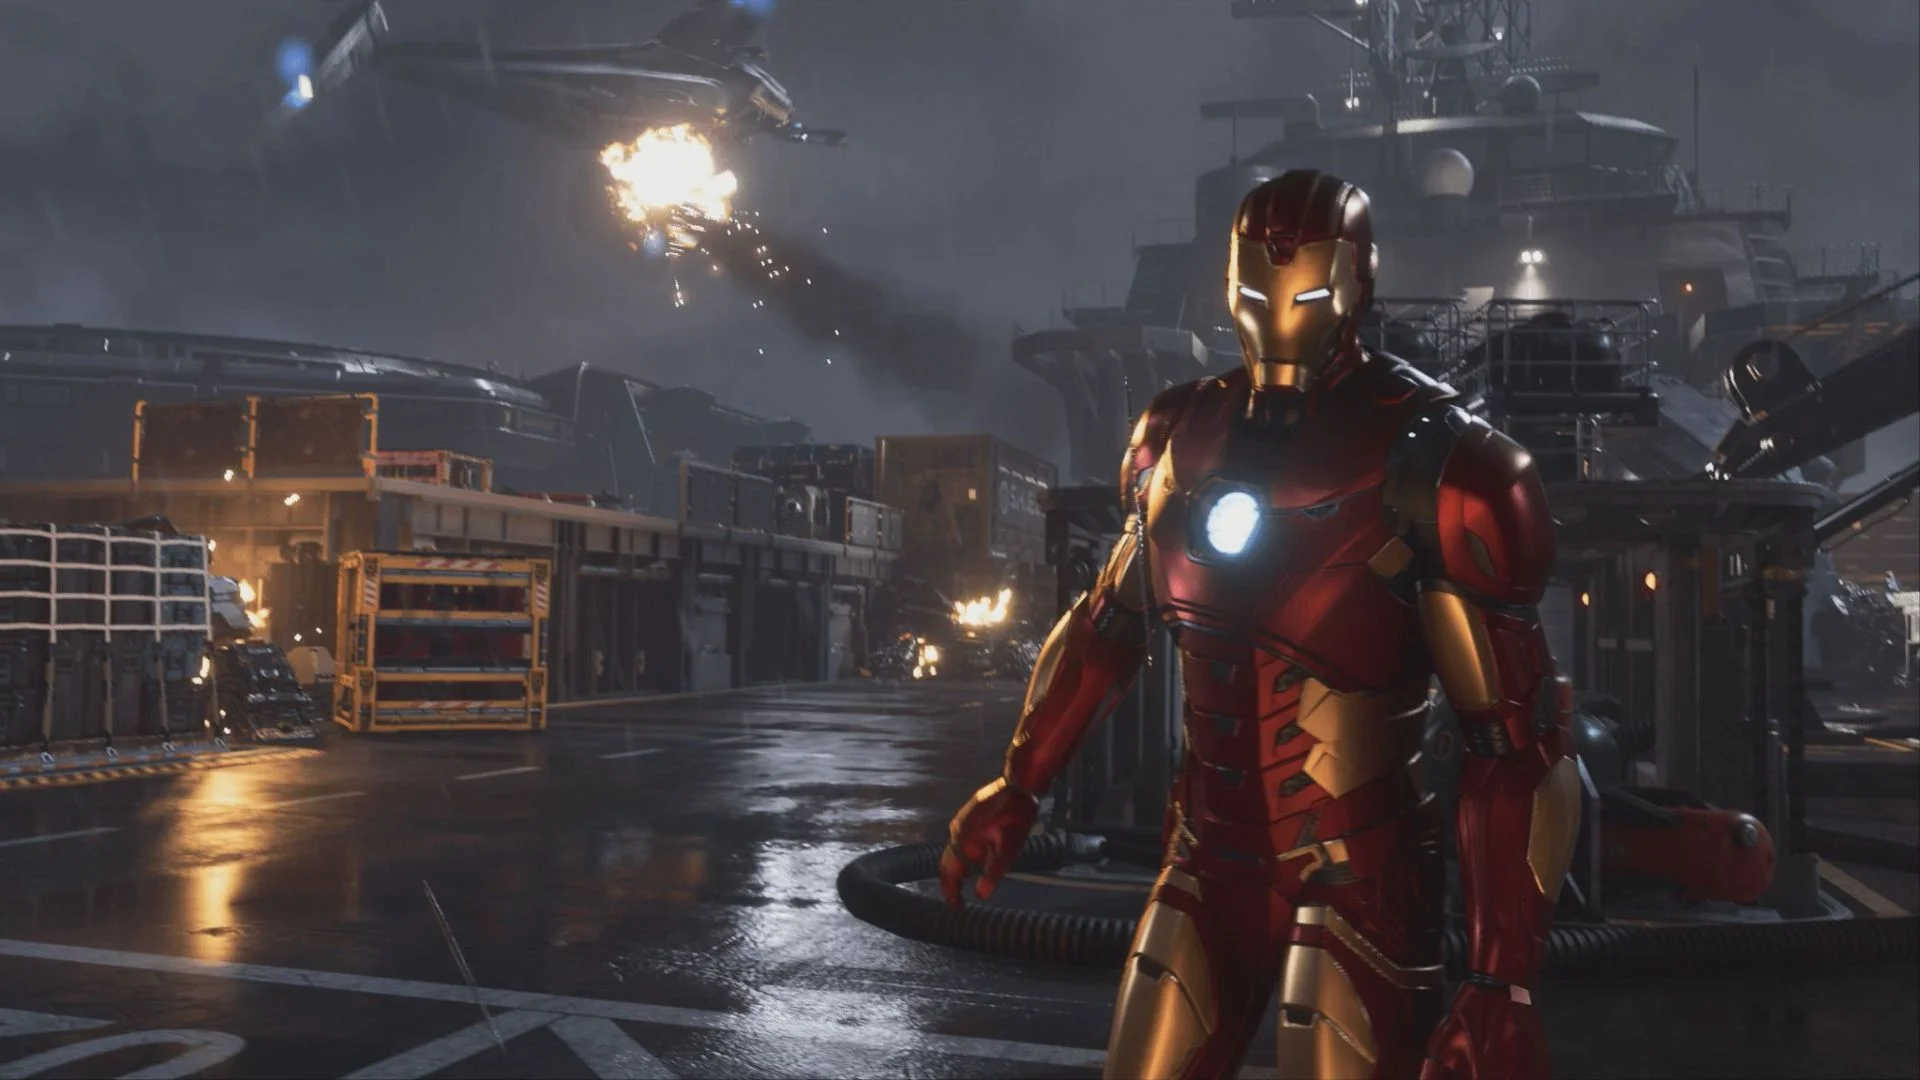 В сеть утек геймплей за Железного человека, Тора и Халка из Marvel’s Avengers [обновлено] - фото 1